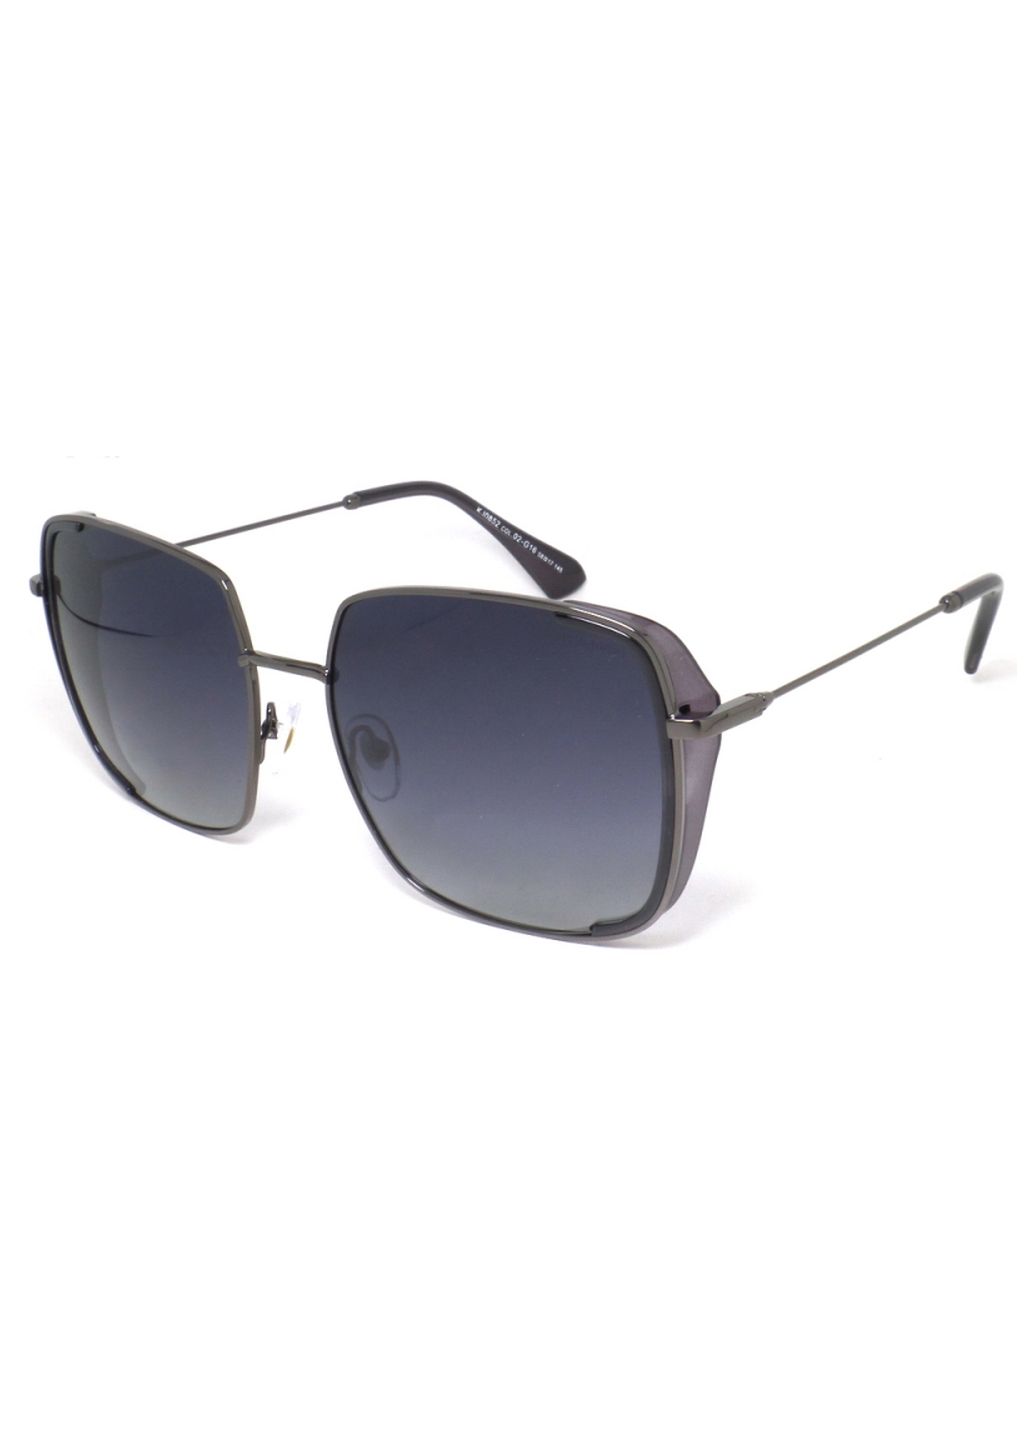 Купить Женские солнцезащитные очки Katrin Jones с поляризацией KJ0852 180051 - Черный в интернет-магазине